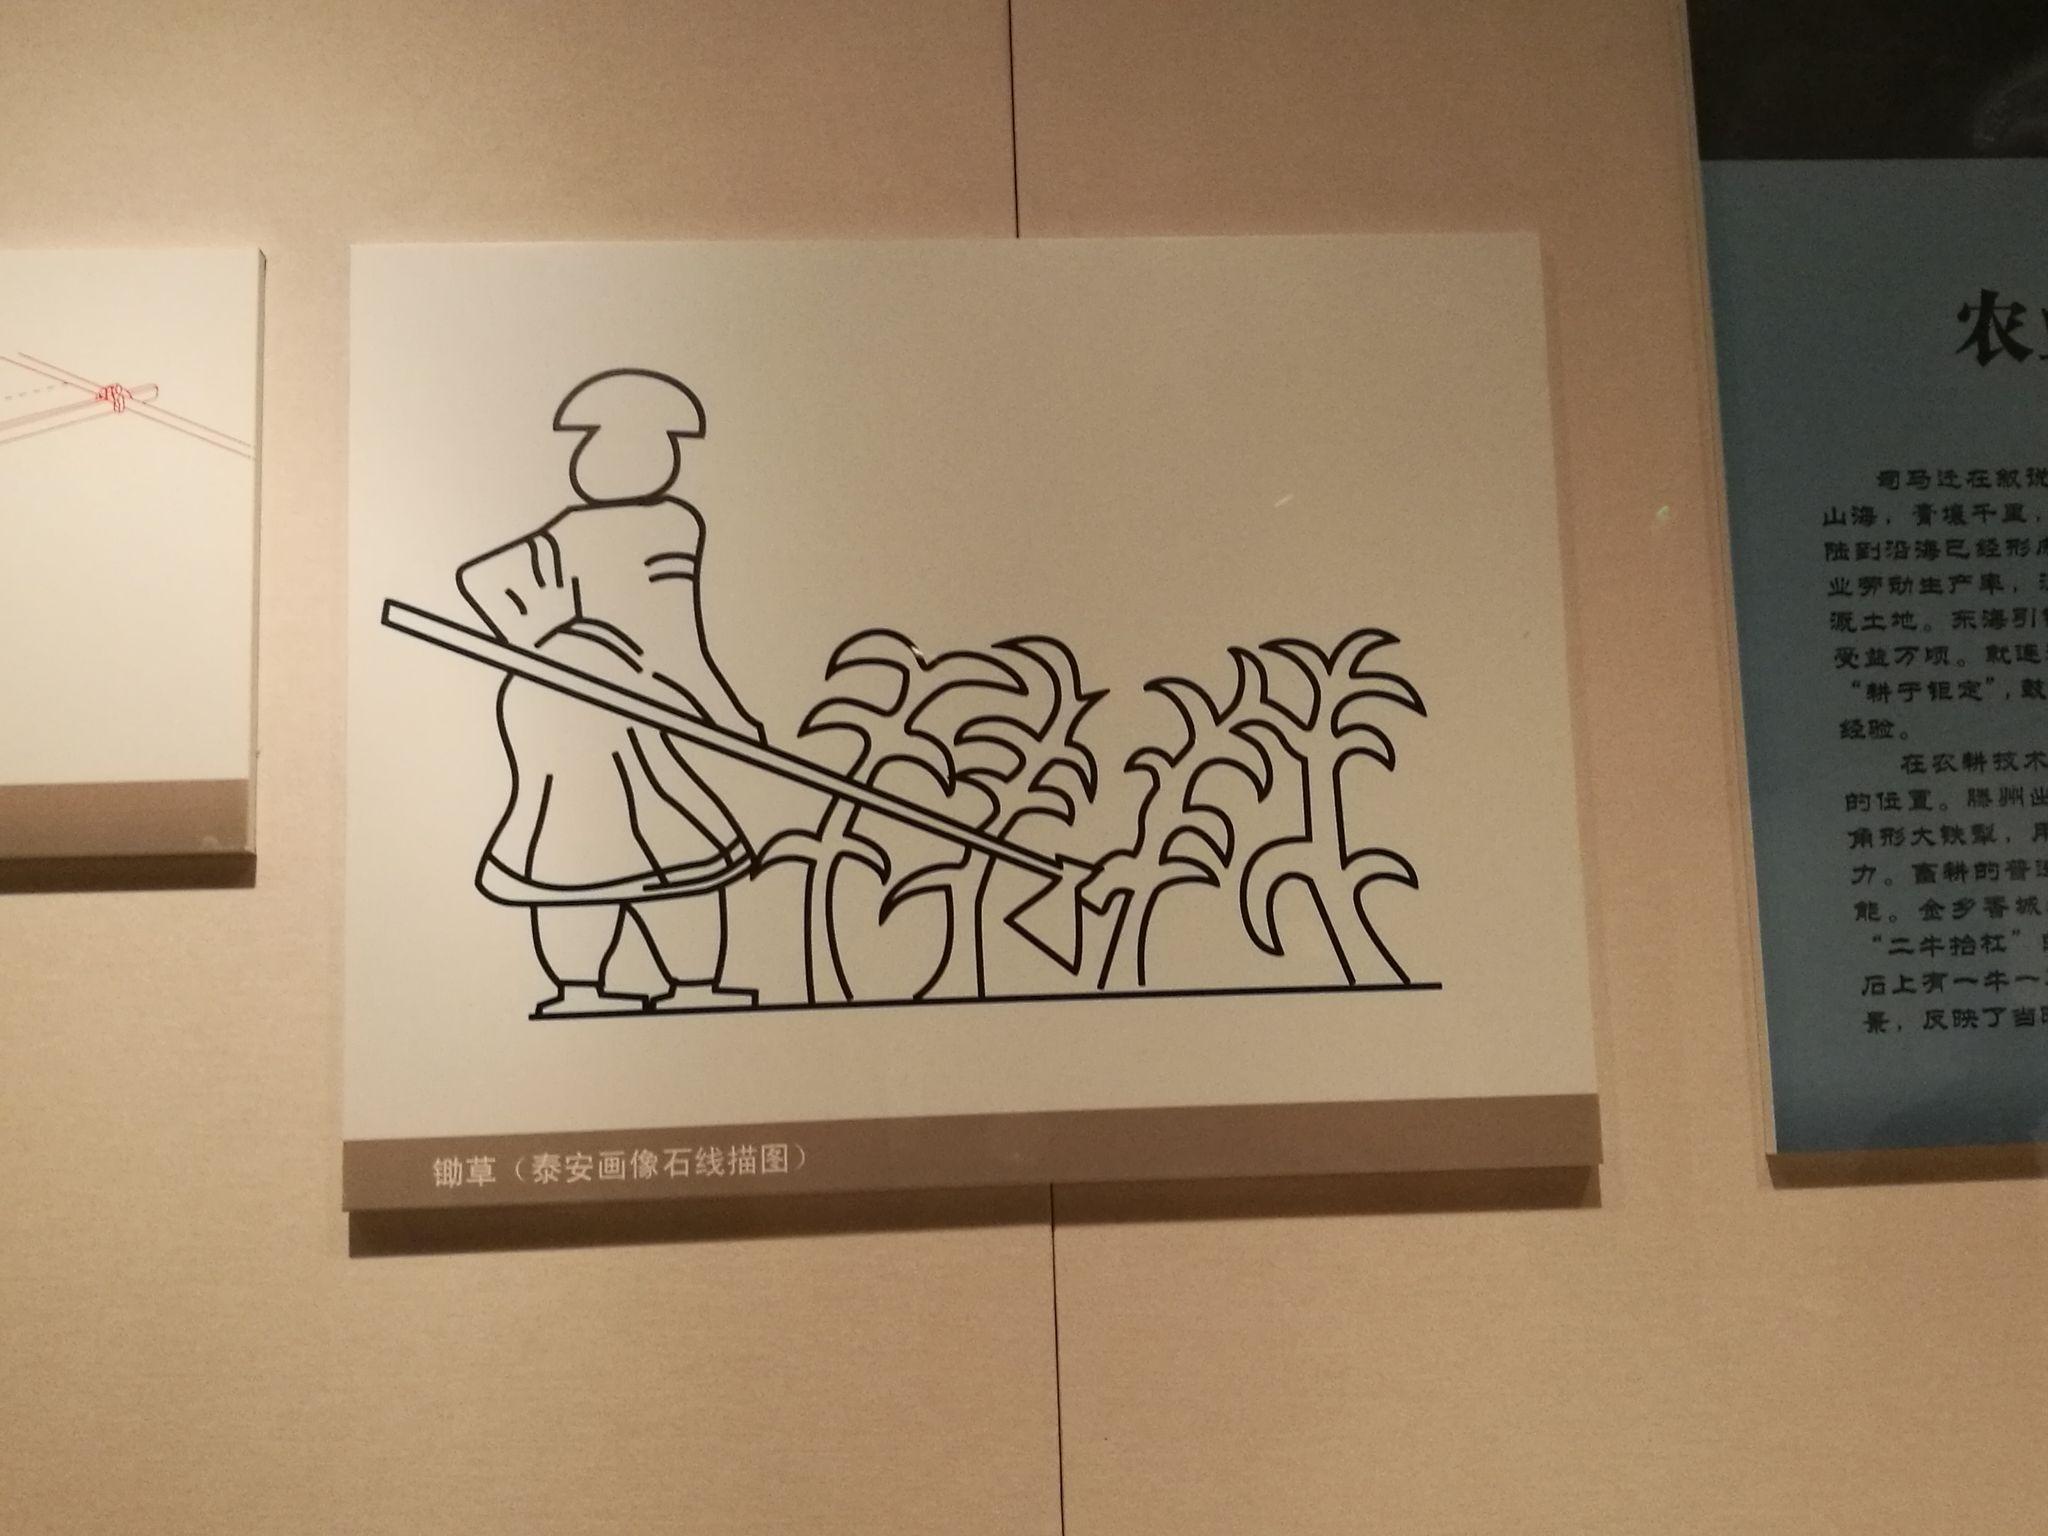 位于秦汉—明清馆的一副图,古代人民锄草的时候居然是这样的……锄头